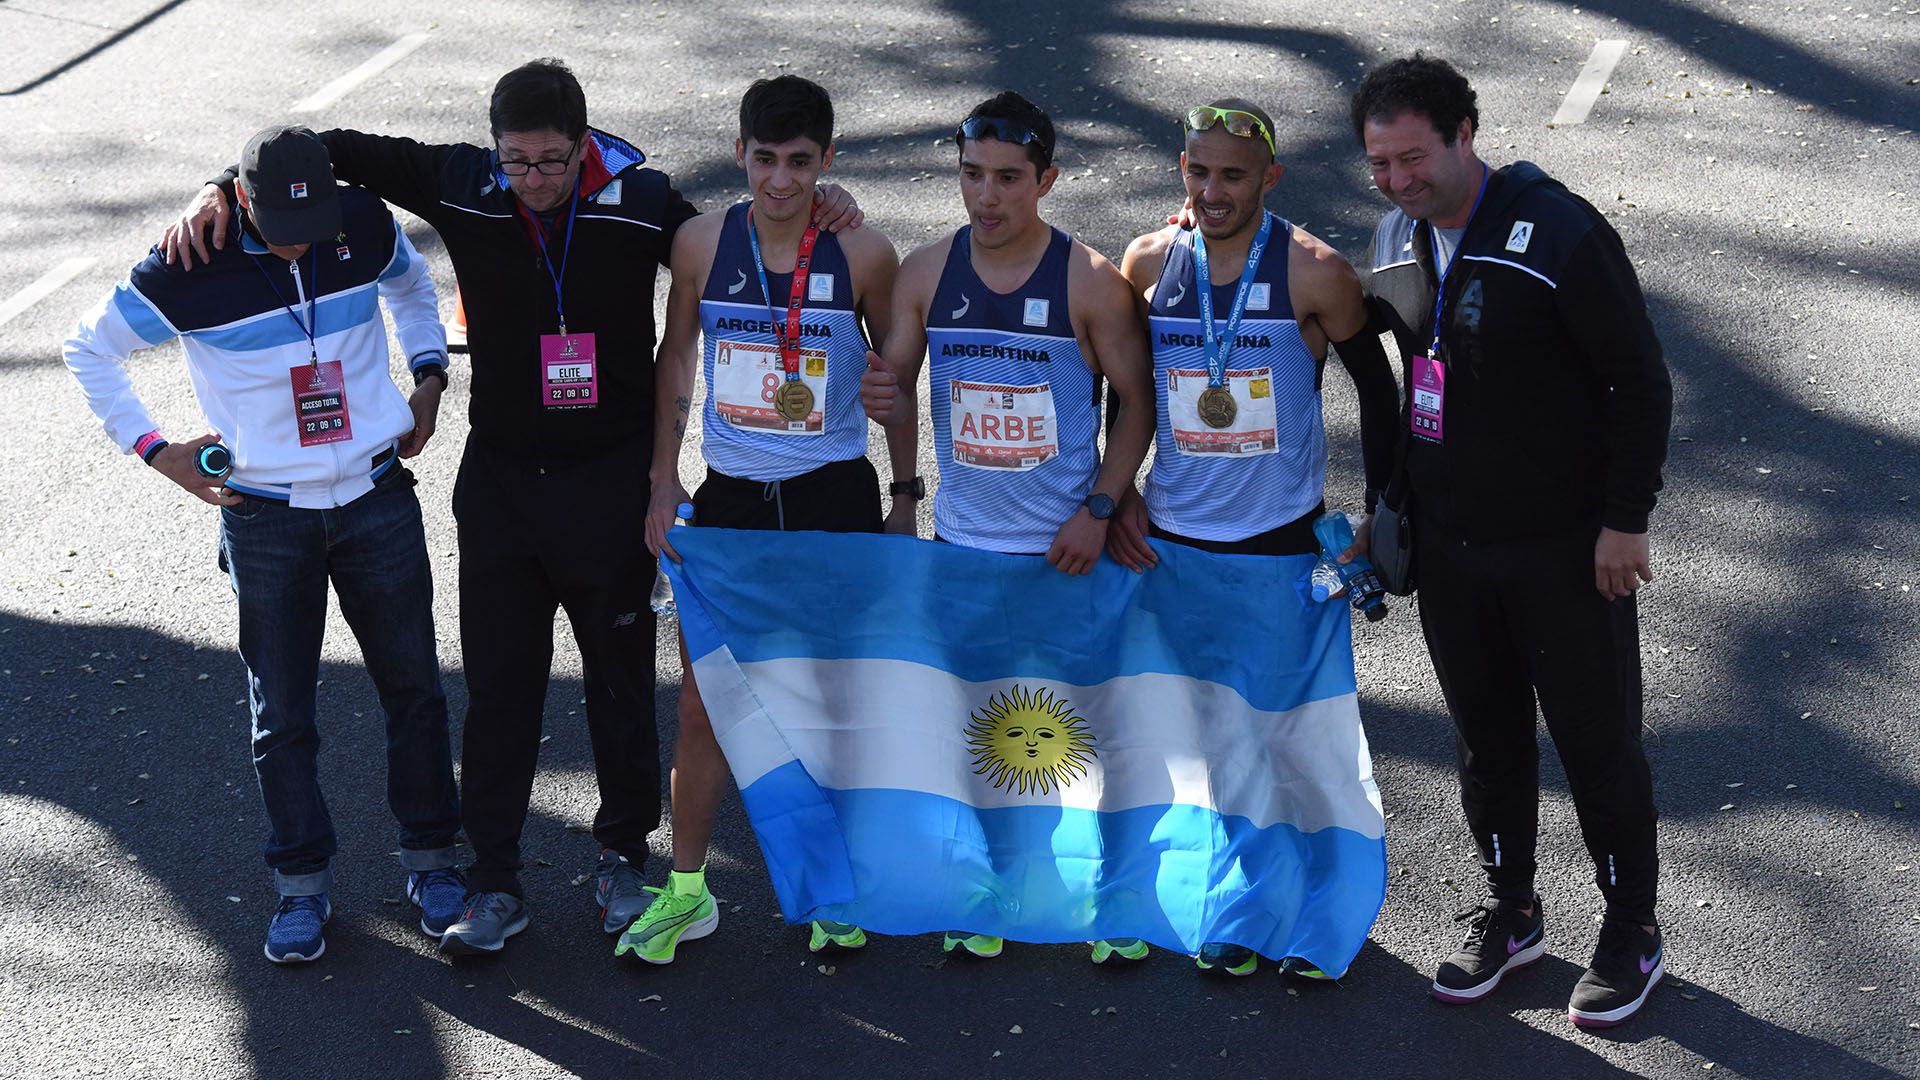 La delegación de los mejores competidores argentinos. En el medio, Joaquín Arbe, el mejor clasificado del país